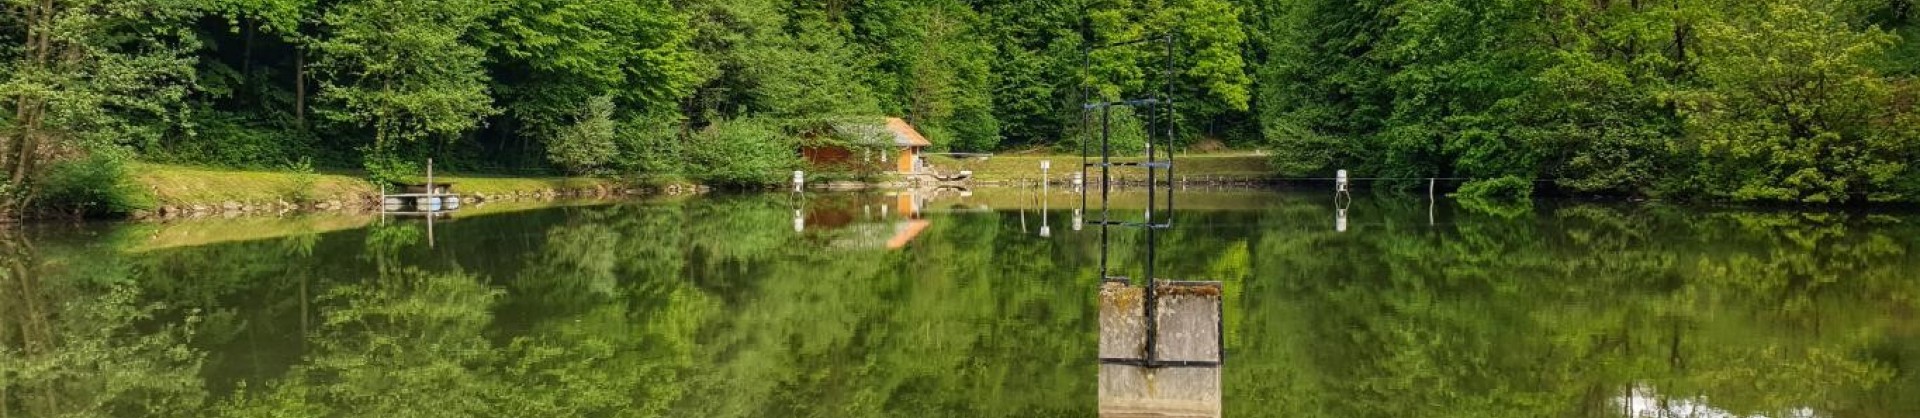 Gramozne jame strug ribogojnica haloze moja jezera jezera slovenije manca korelc 3 sl